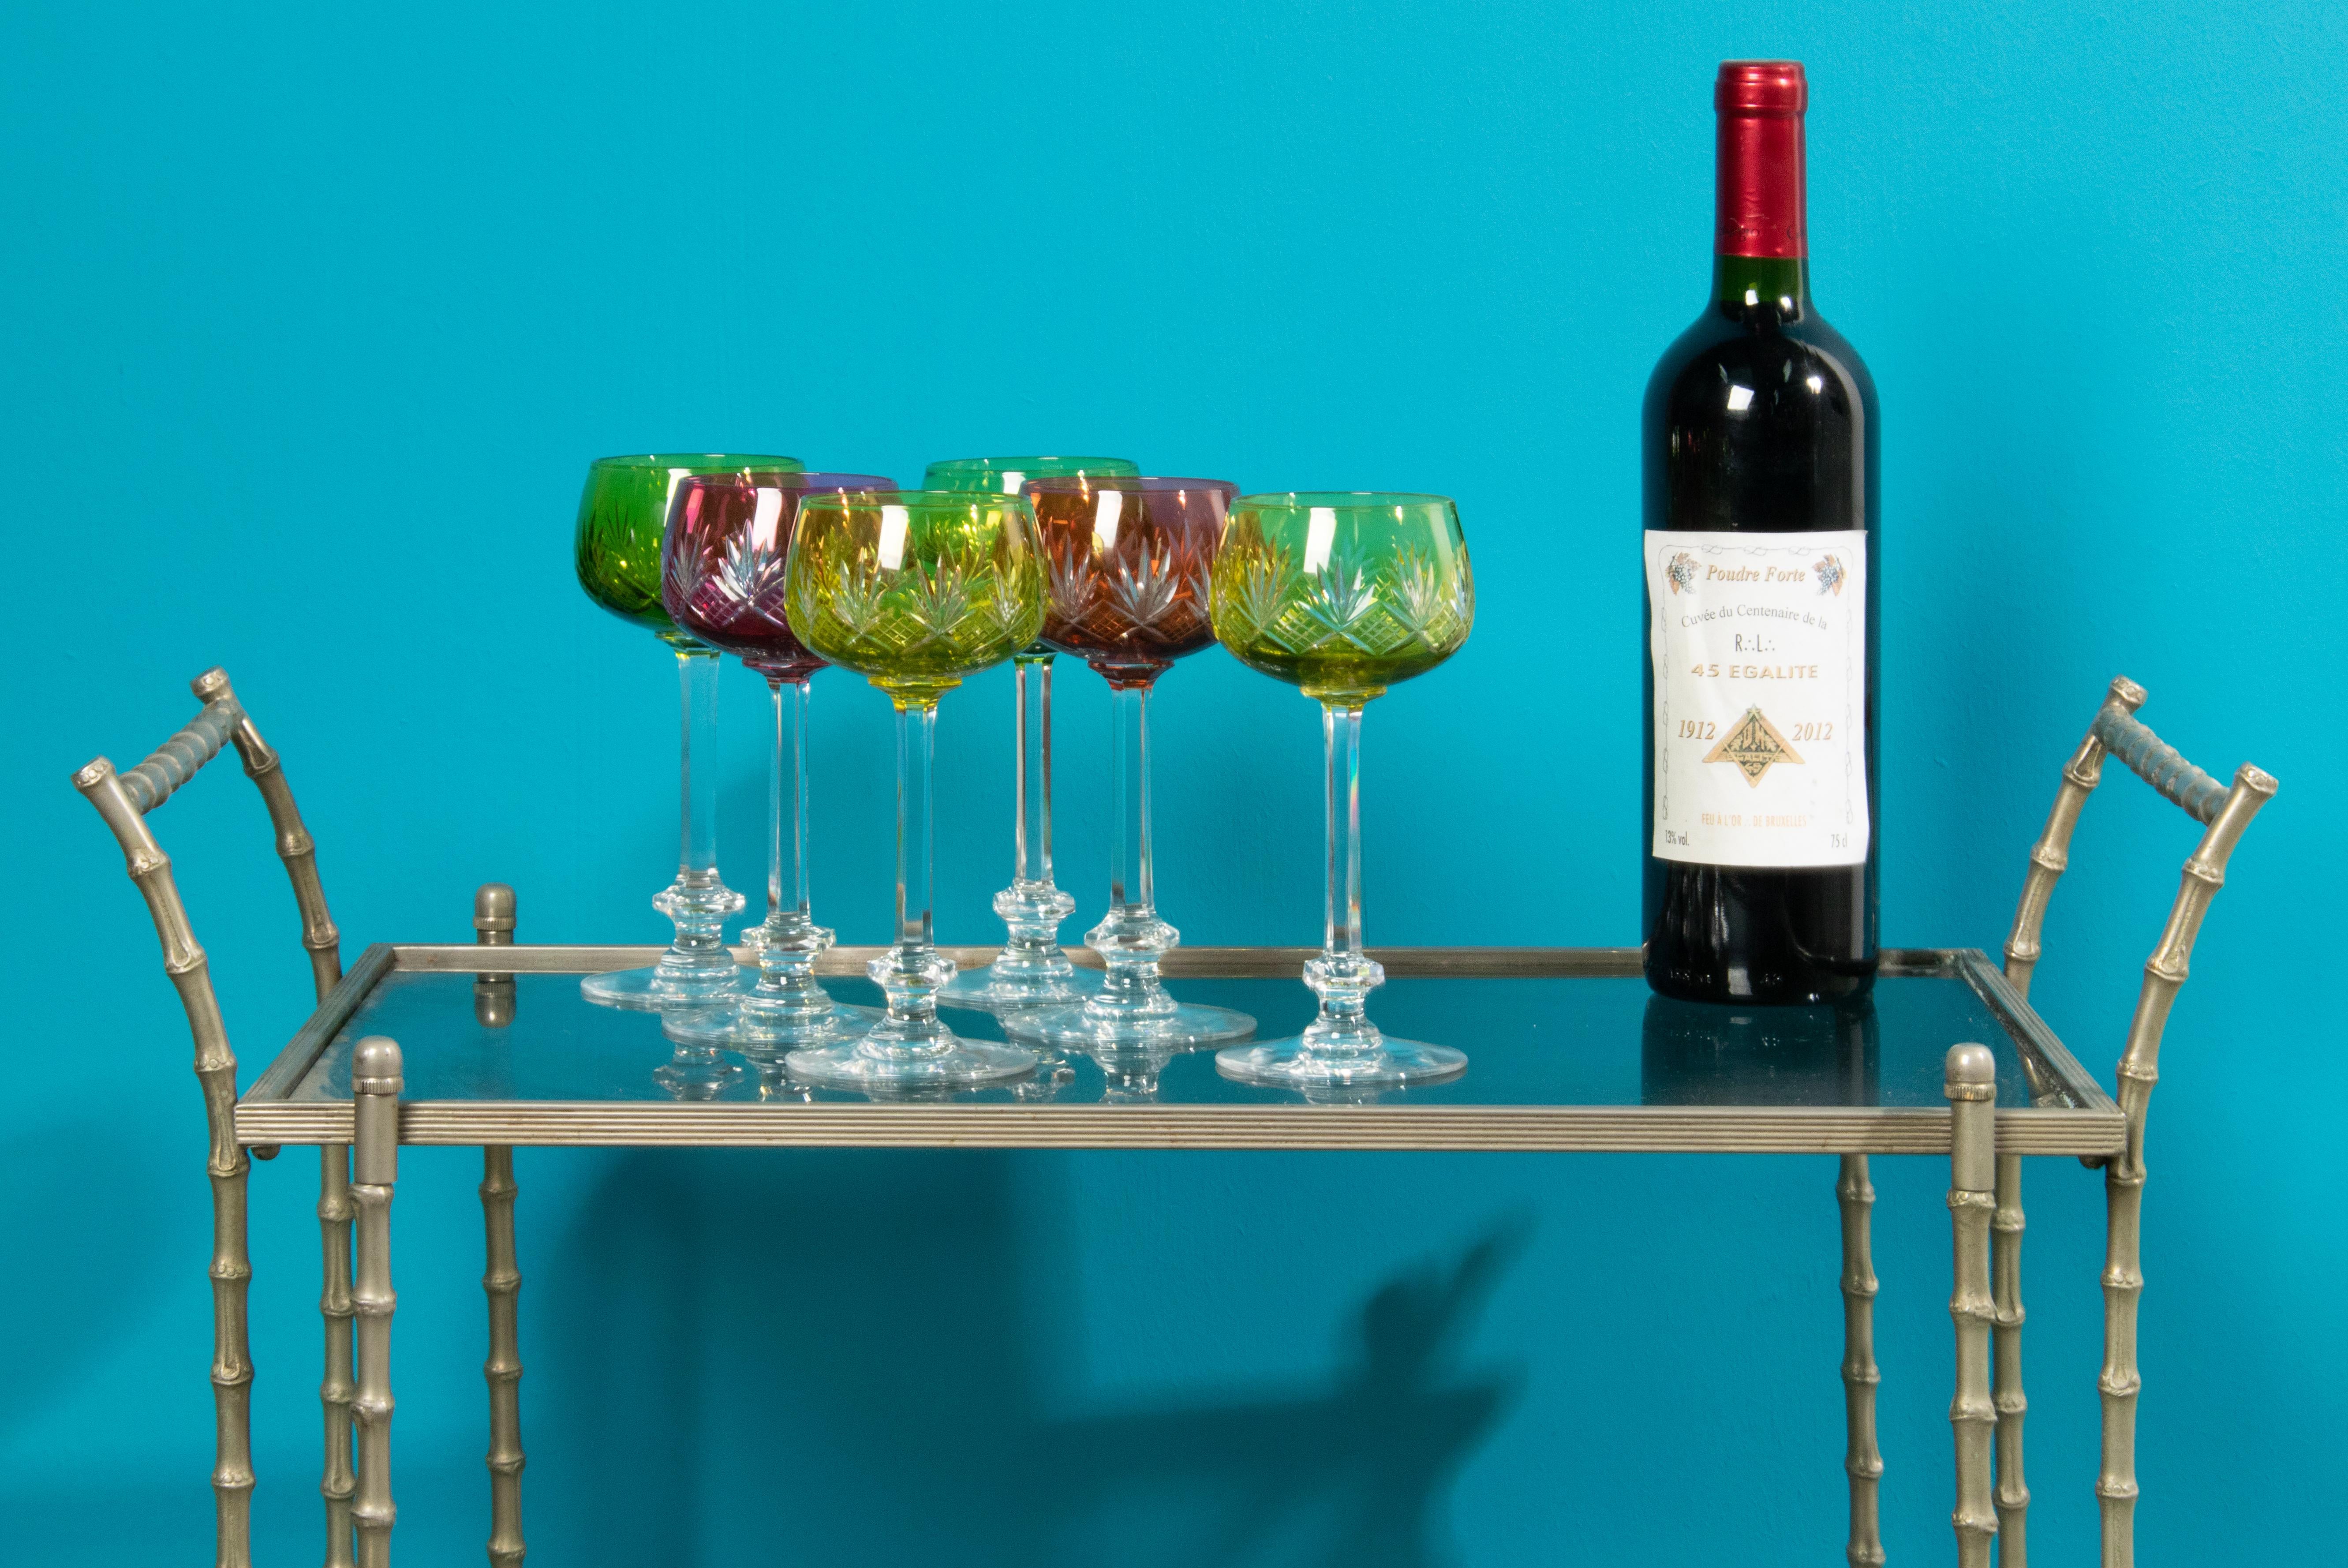 Un magnifique ensemble de 6 verres à vin en cristal, fabriqués par la société belge Val Saint Lambert. 
Les verres sont richement décorés de fines sculptures. 
Les lunettes sont en très bon état. Pas de chips. 
 